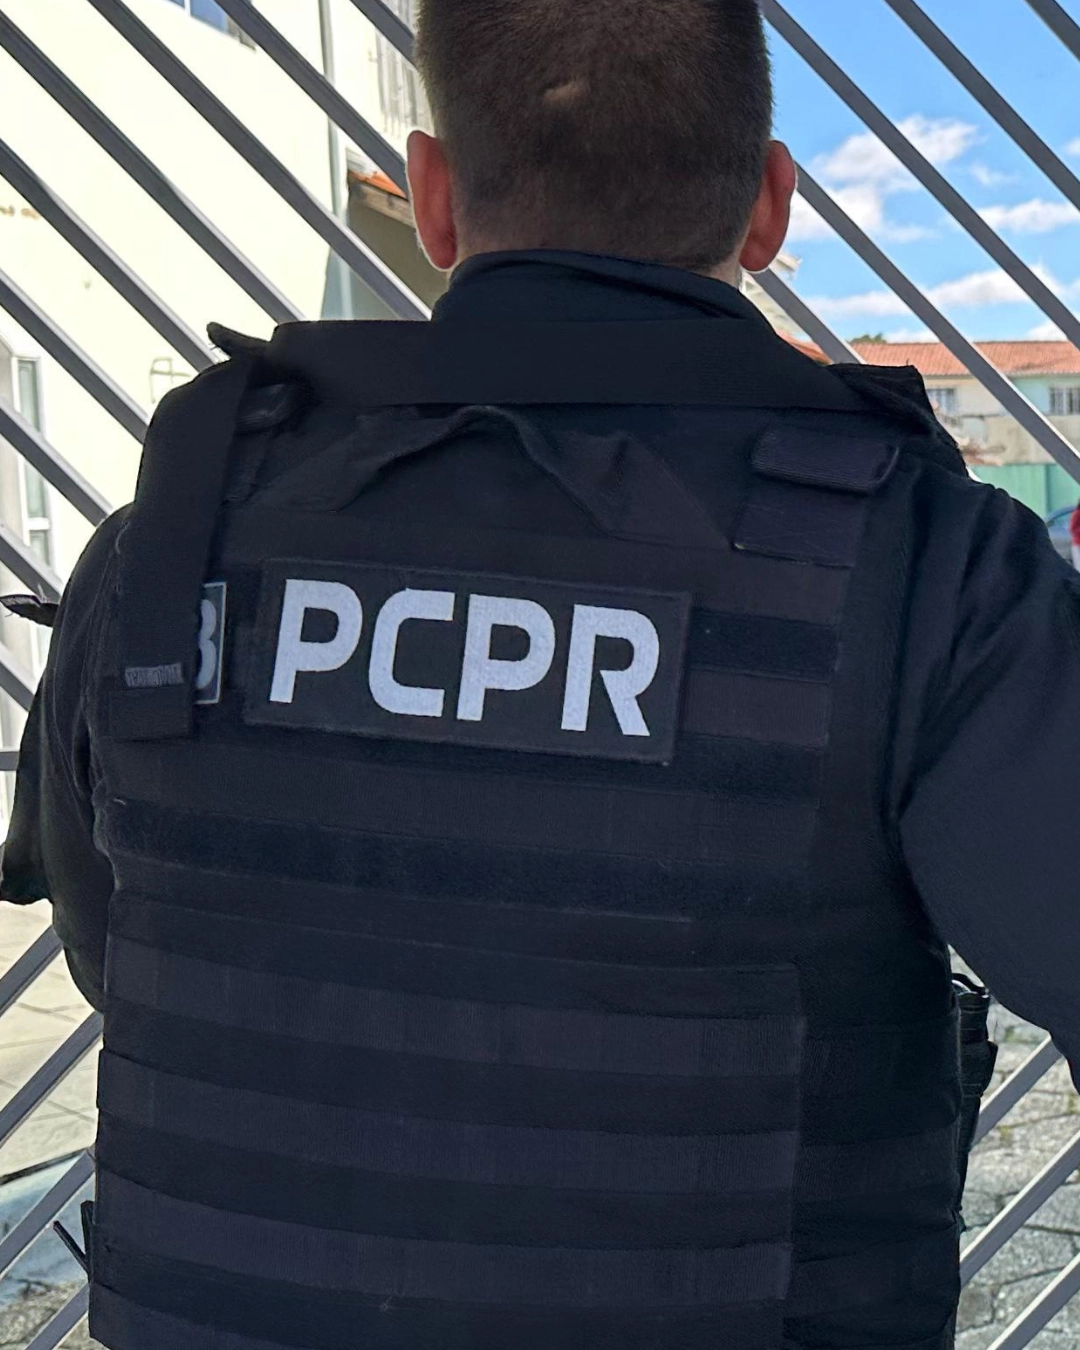 Imagem de destaque - PCPR lança operação contra suspeitos de estelionato em Curitiba e RMC